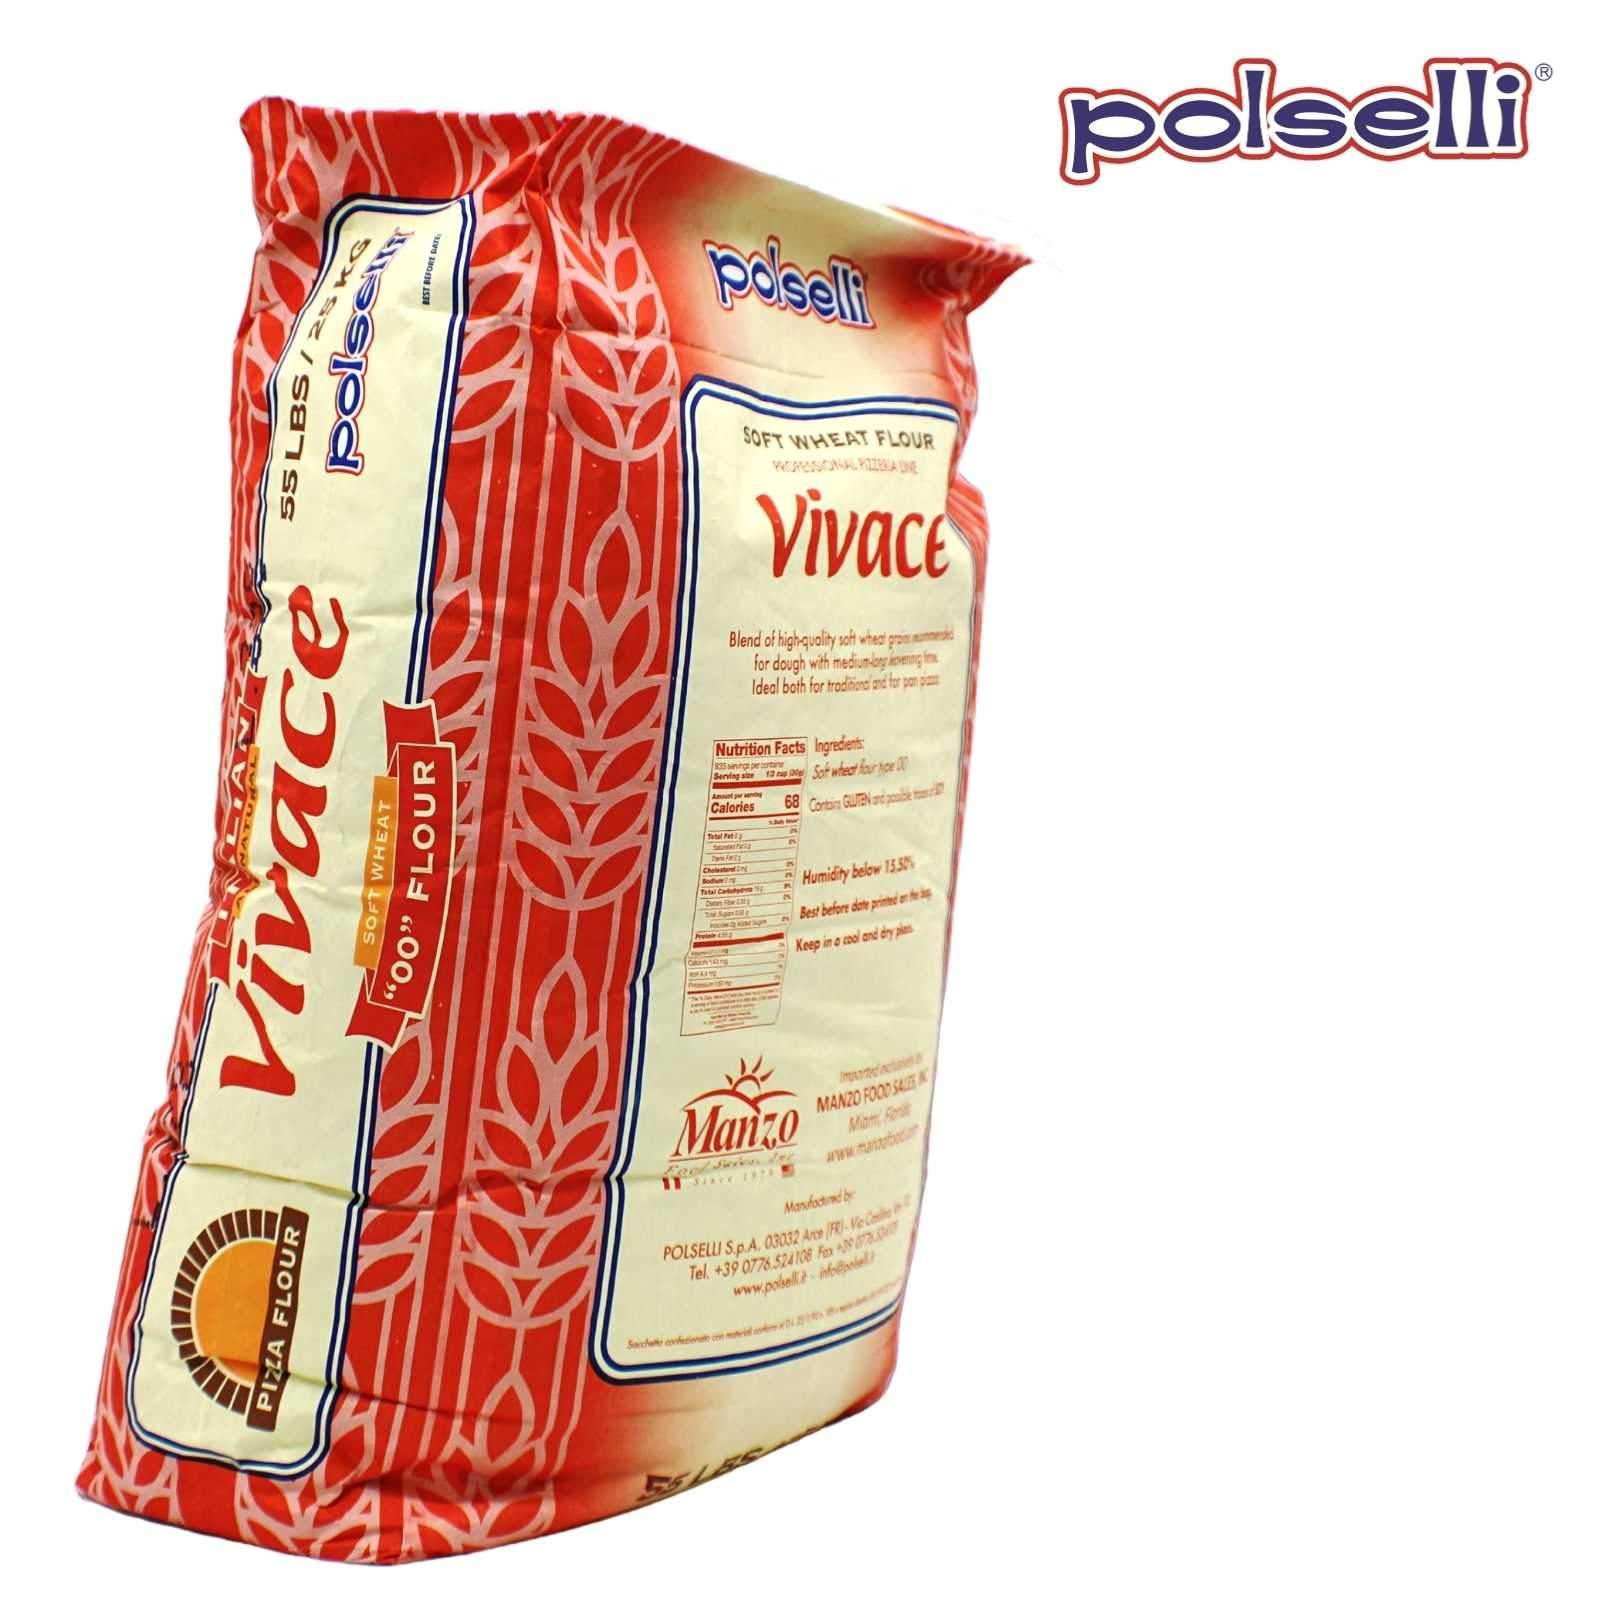 Polselli: 00 Pizza Flour (Vivace) 55 lbs. Bag - Wholesale Italian Food